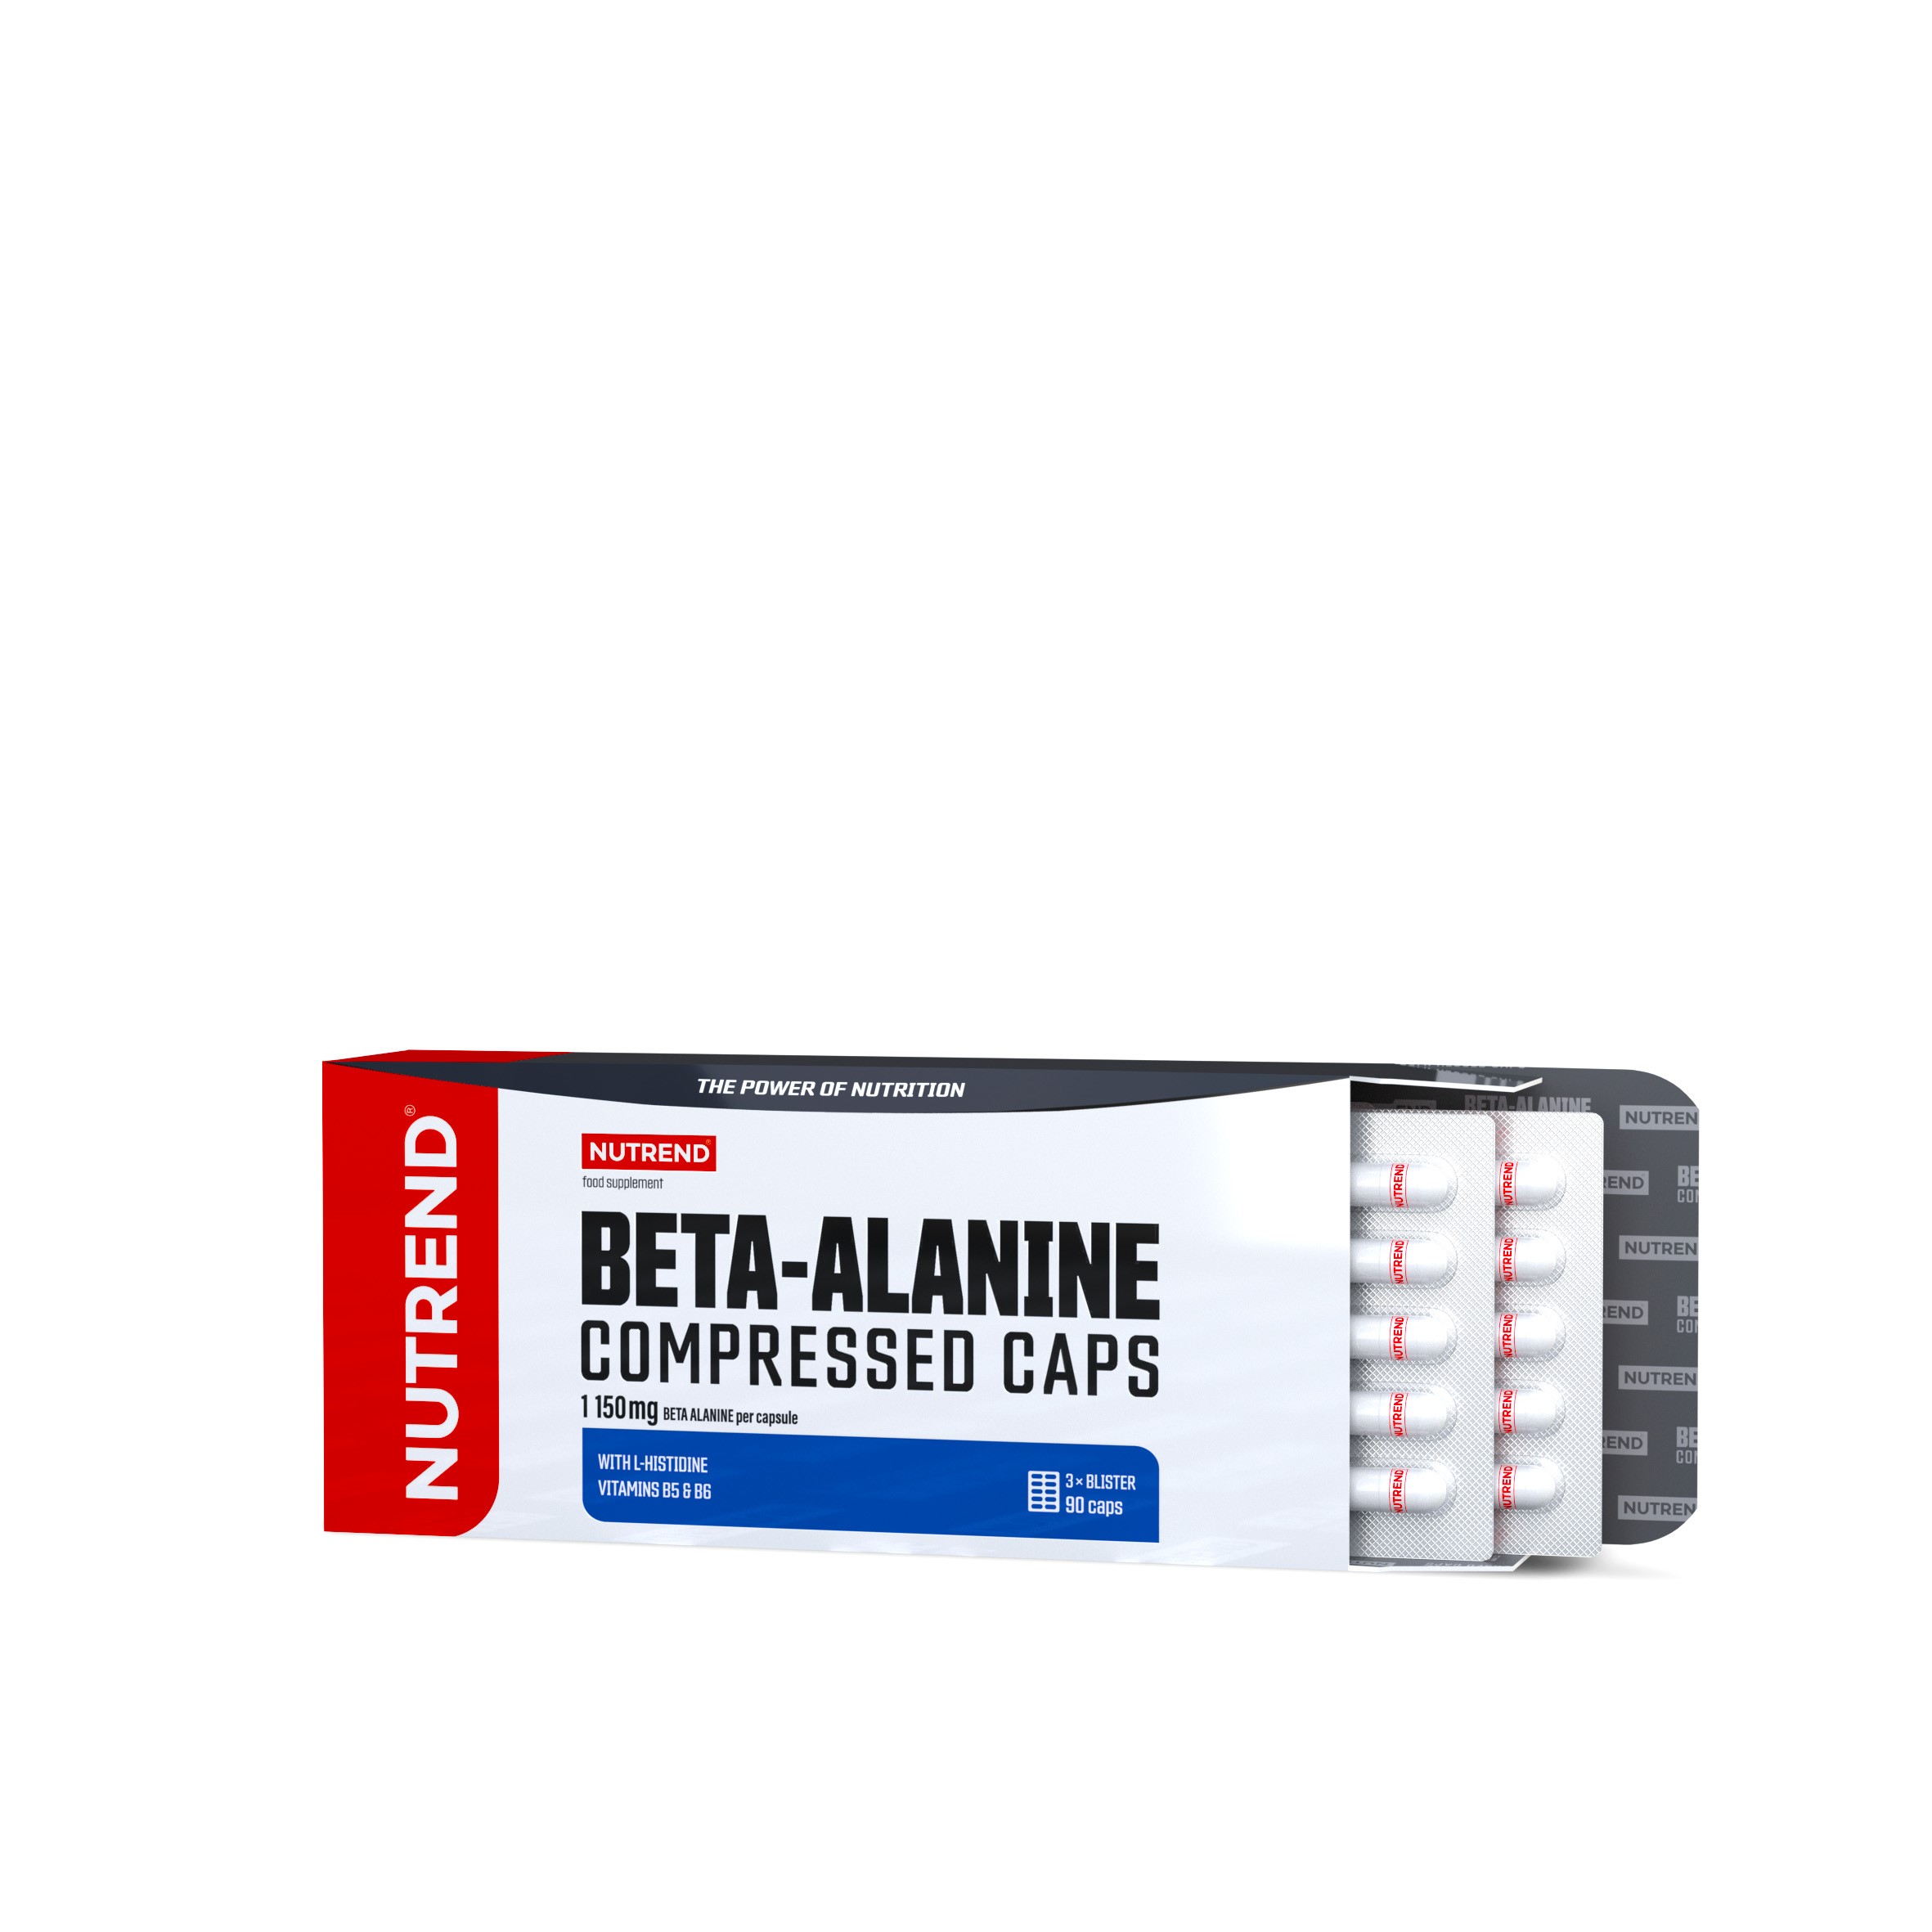 Aminoacizi - BETA-ALANINE COMPRESSED CAPS 90 capsule
, advancednutrition.ro